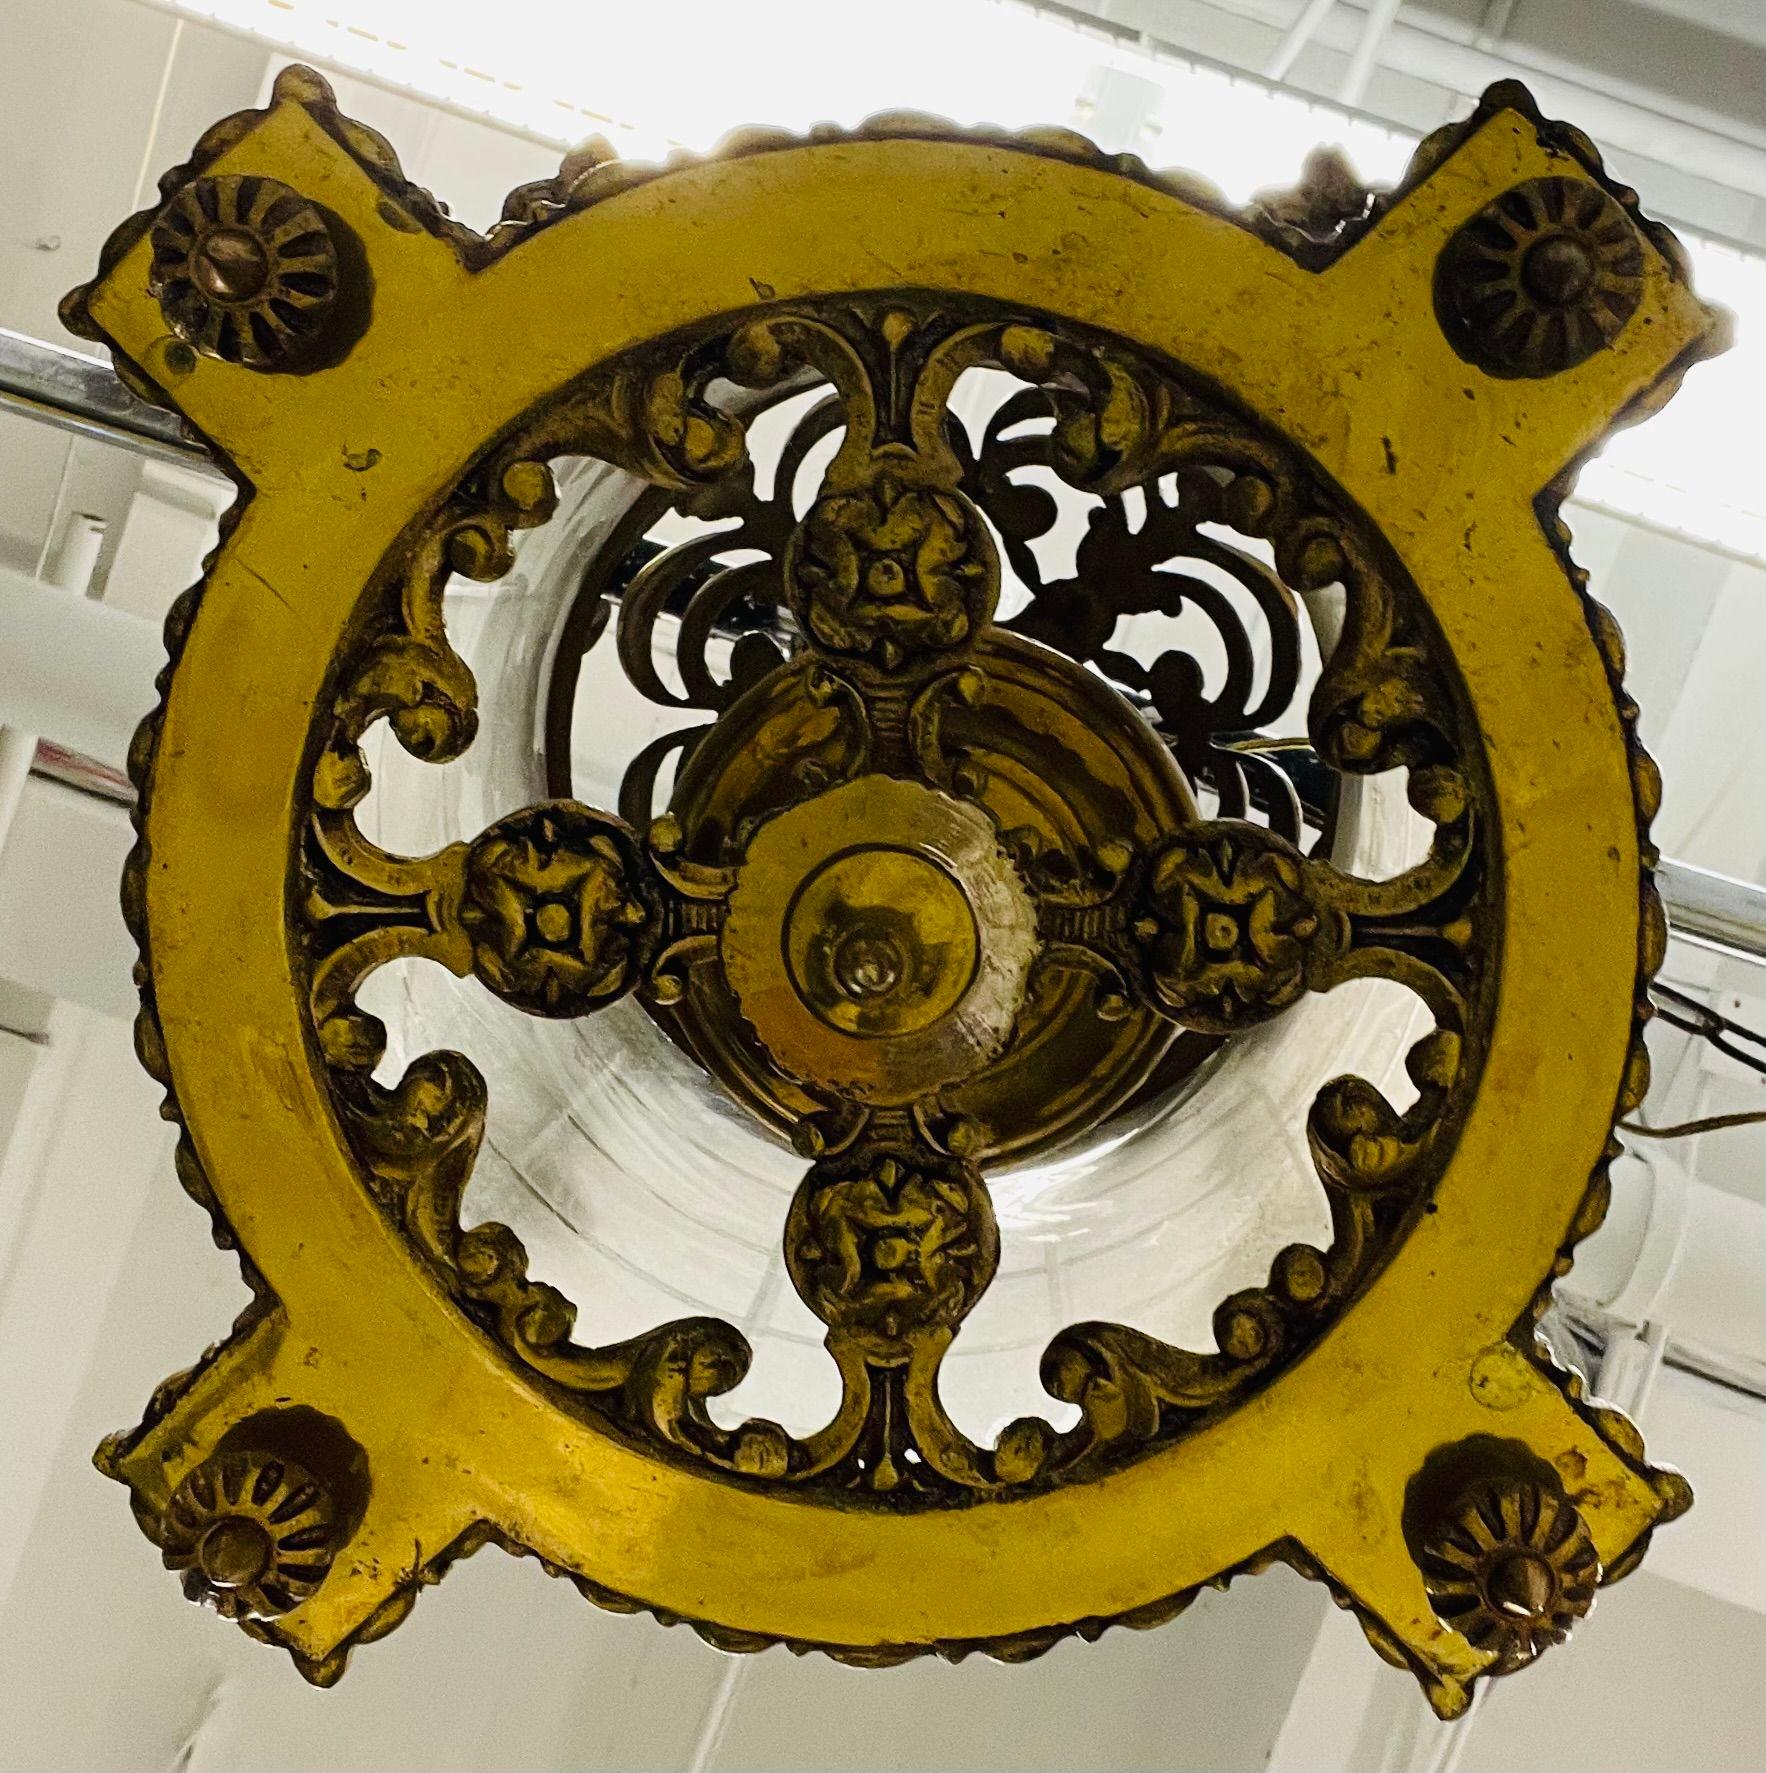 Empire Dore Laterne Kronleuchter, mattiertes geätztes Glas, 19. Jahrhundert, massive Bronze Pendelleuchte
Eine fein gegossene Laterne aus Dore-Bronze mit geätztem Milchglasdesign. Das Gehäuse mit Rosen-, Blumen- und Schneckenmuster hängt an einem